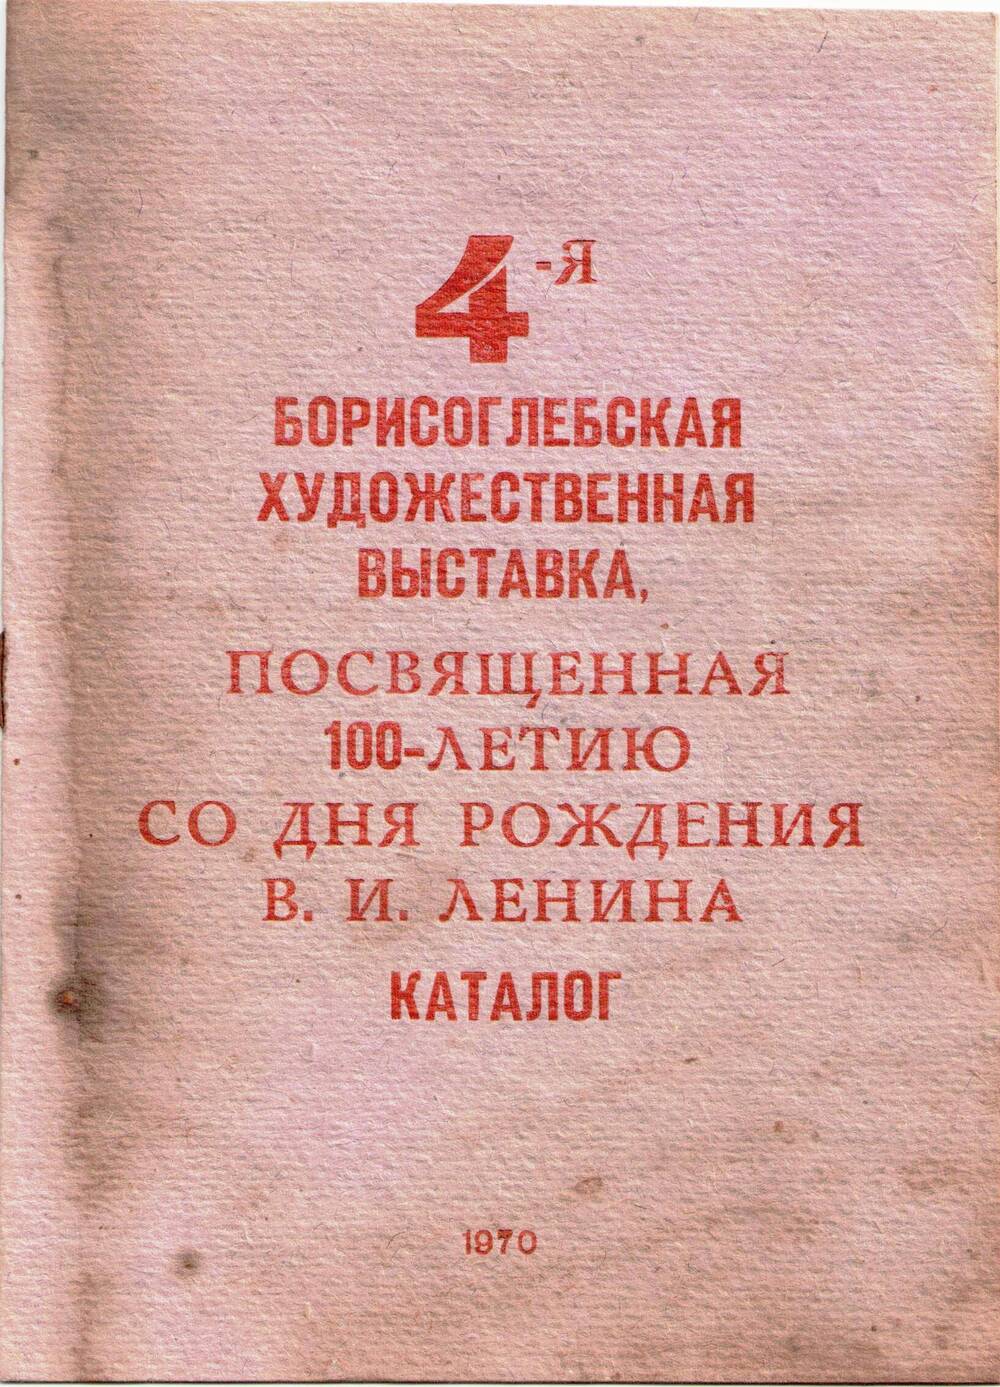 Каталог 4-ой Борисоглебской художественной выставки, посвященной 100-летию со дня рождения В.И.Ленина.